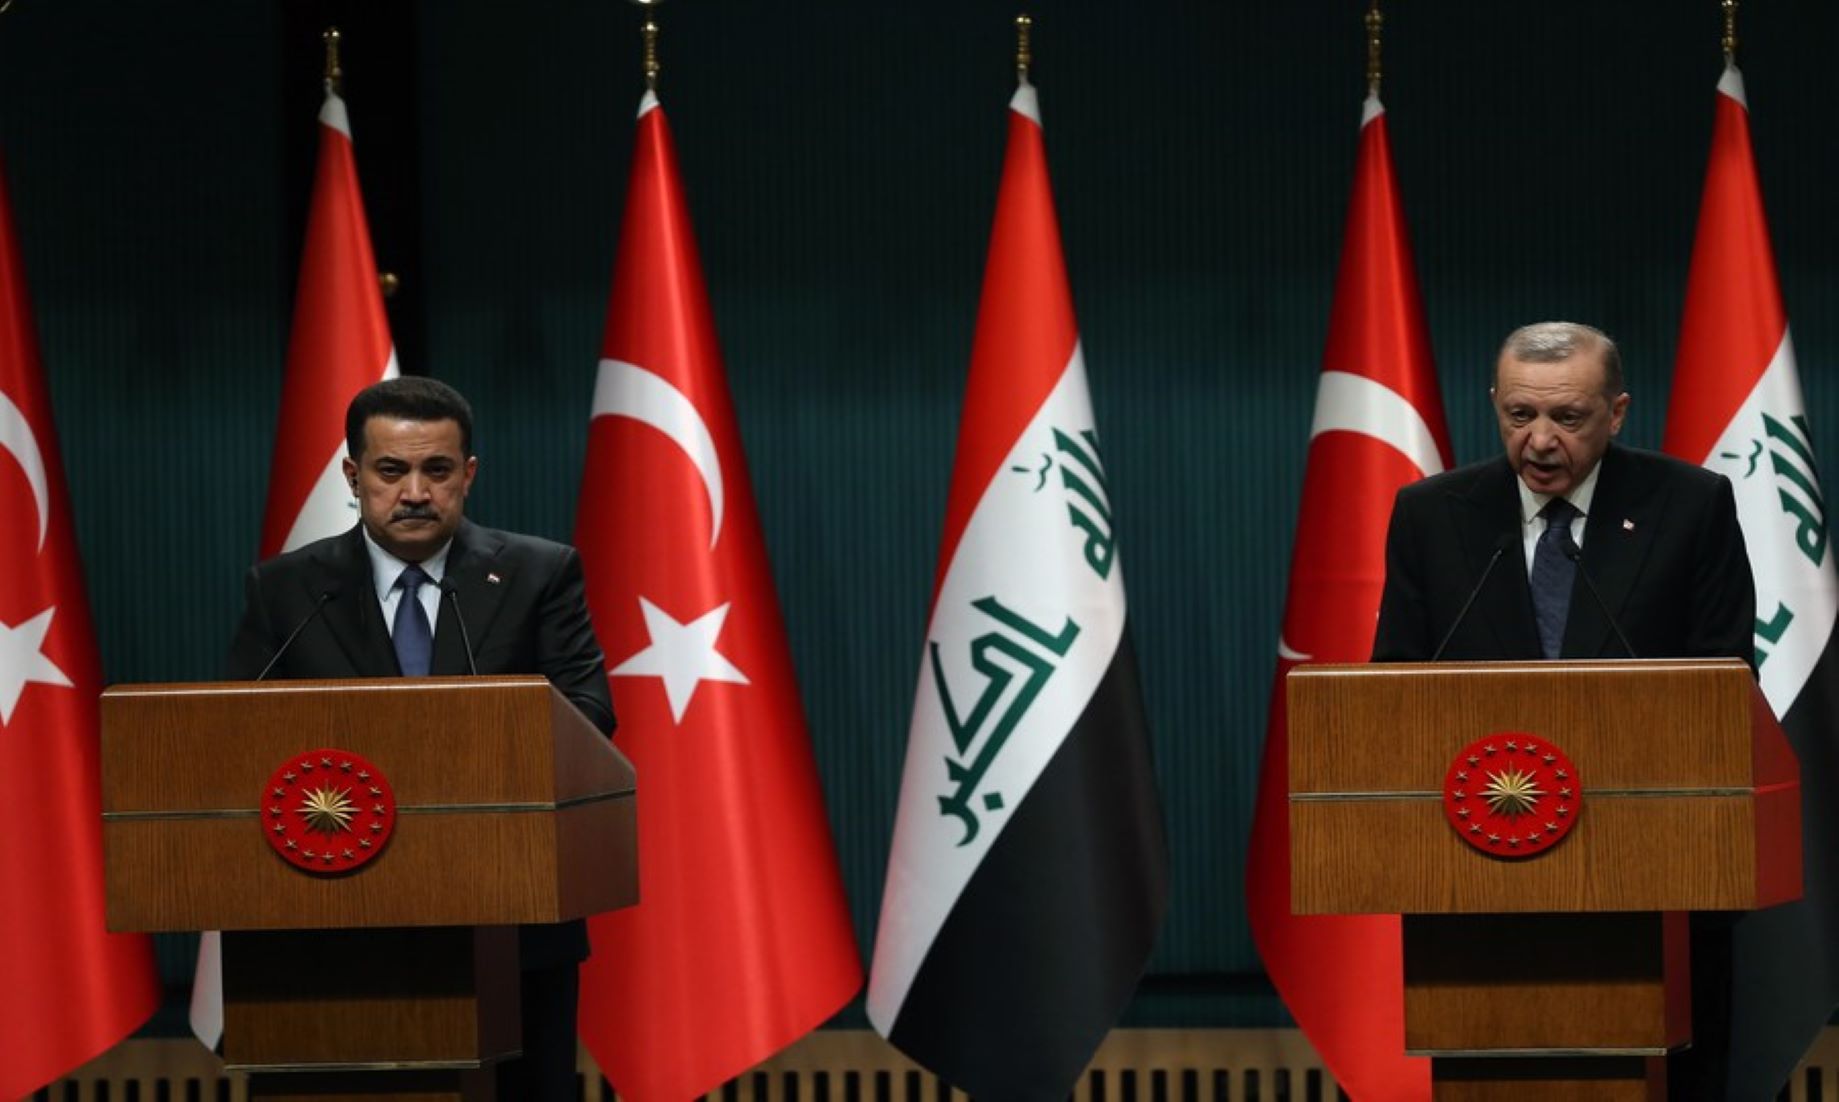 Iraq, Türkiye To Build Transportation Corridor Linking Basra To Turkish Border